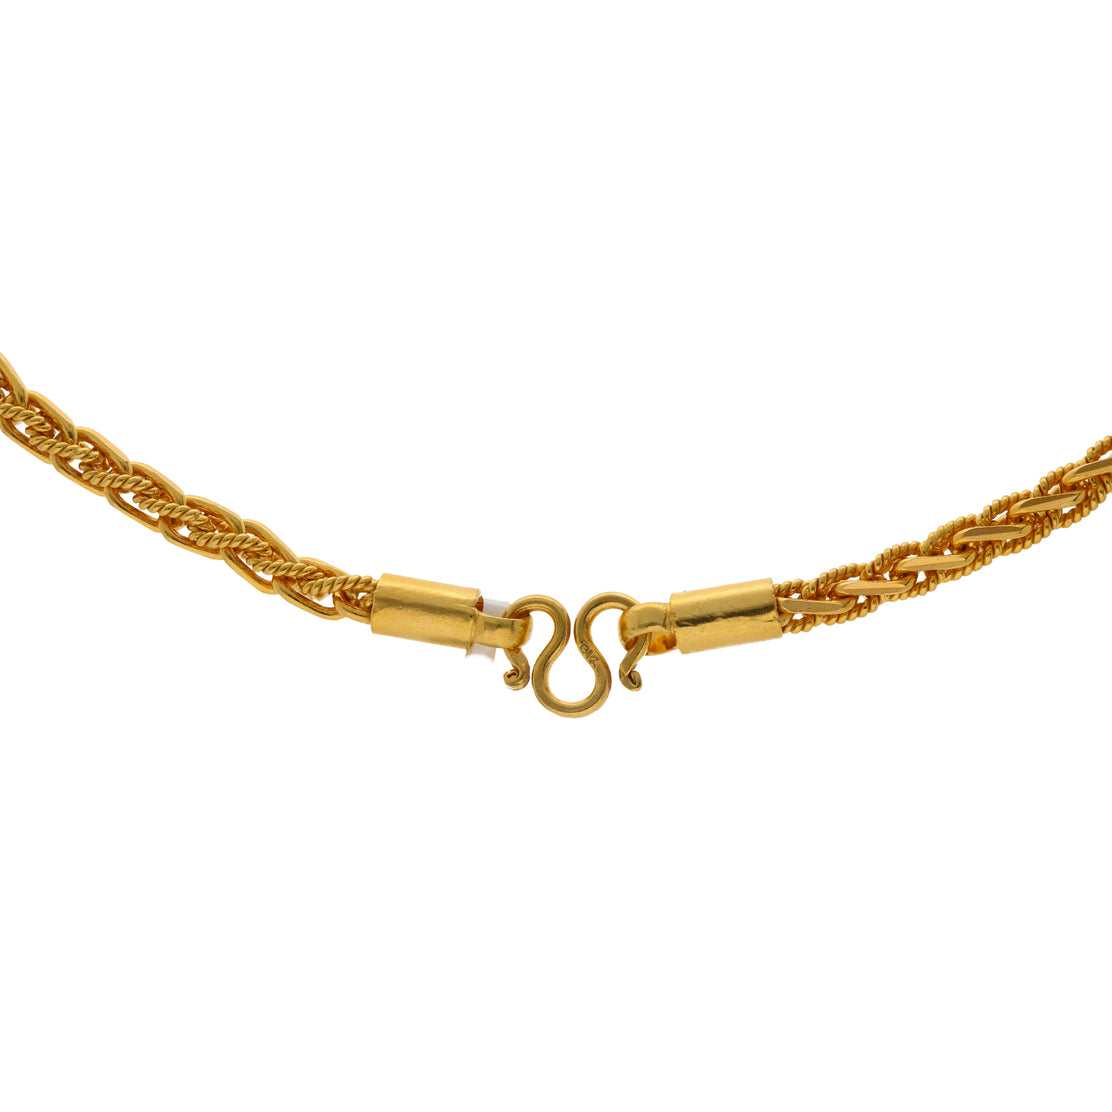 22K Yellow Gold Rope Chain (64.4gm)